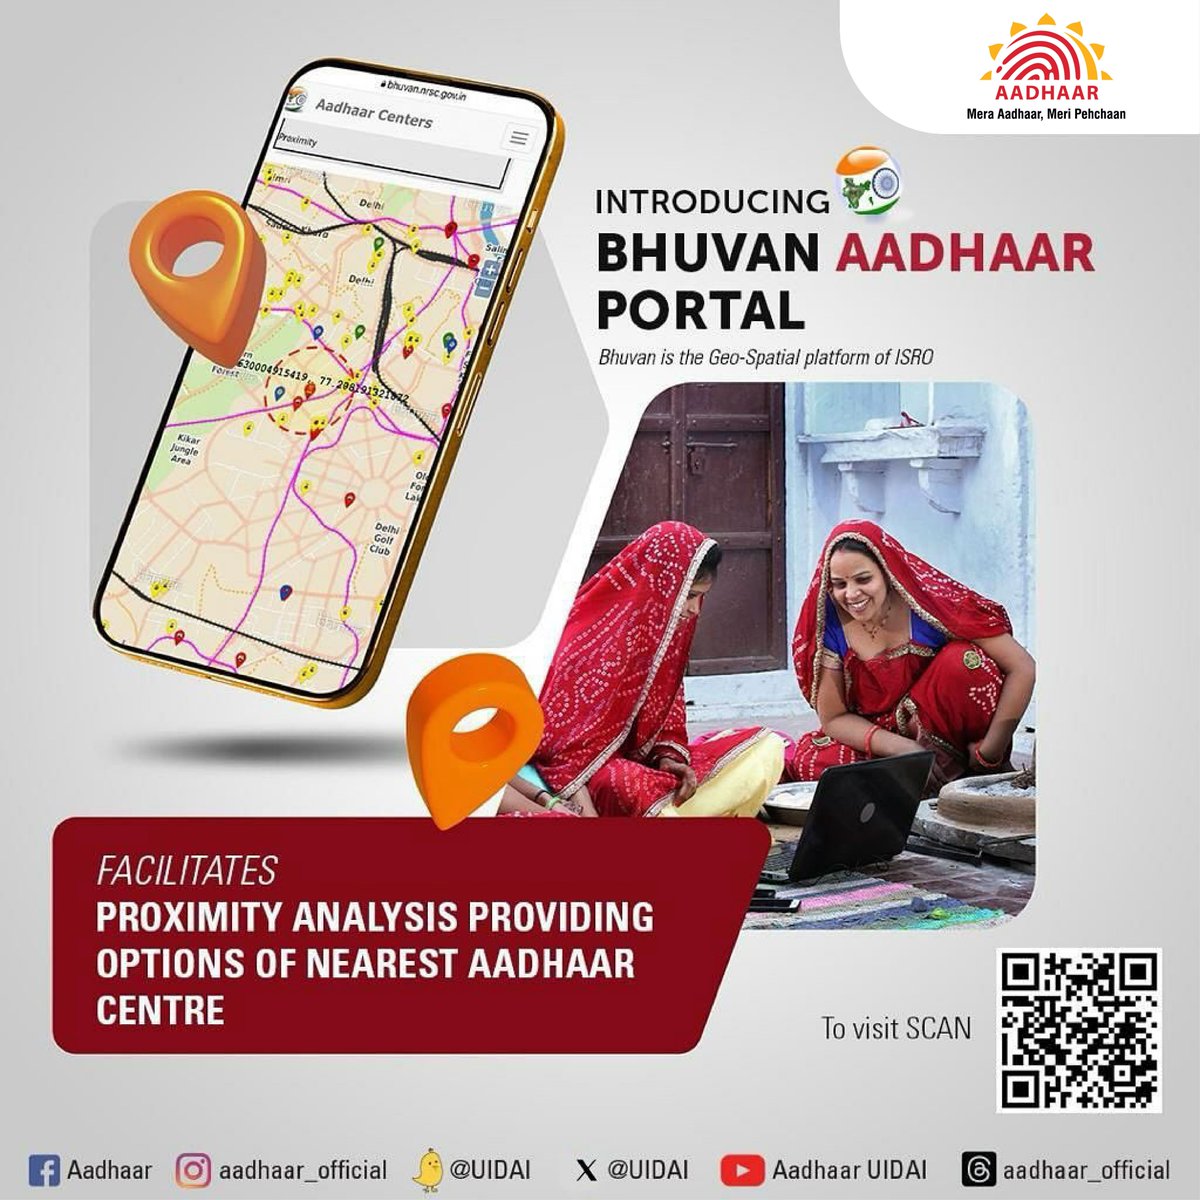 #BhuvanAadhaarPortal You can now easily locate your nearest #AadhaarSevaKendra or #AadhaarCentre by using the Bhuvan Aadhaar Portal. Click here: bhuvan-app3.nrsc.gov.in/aadhaar/